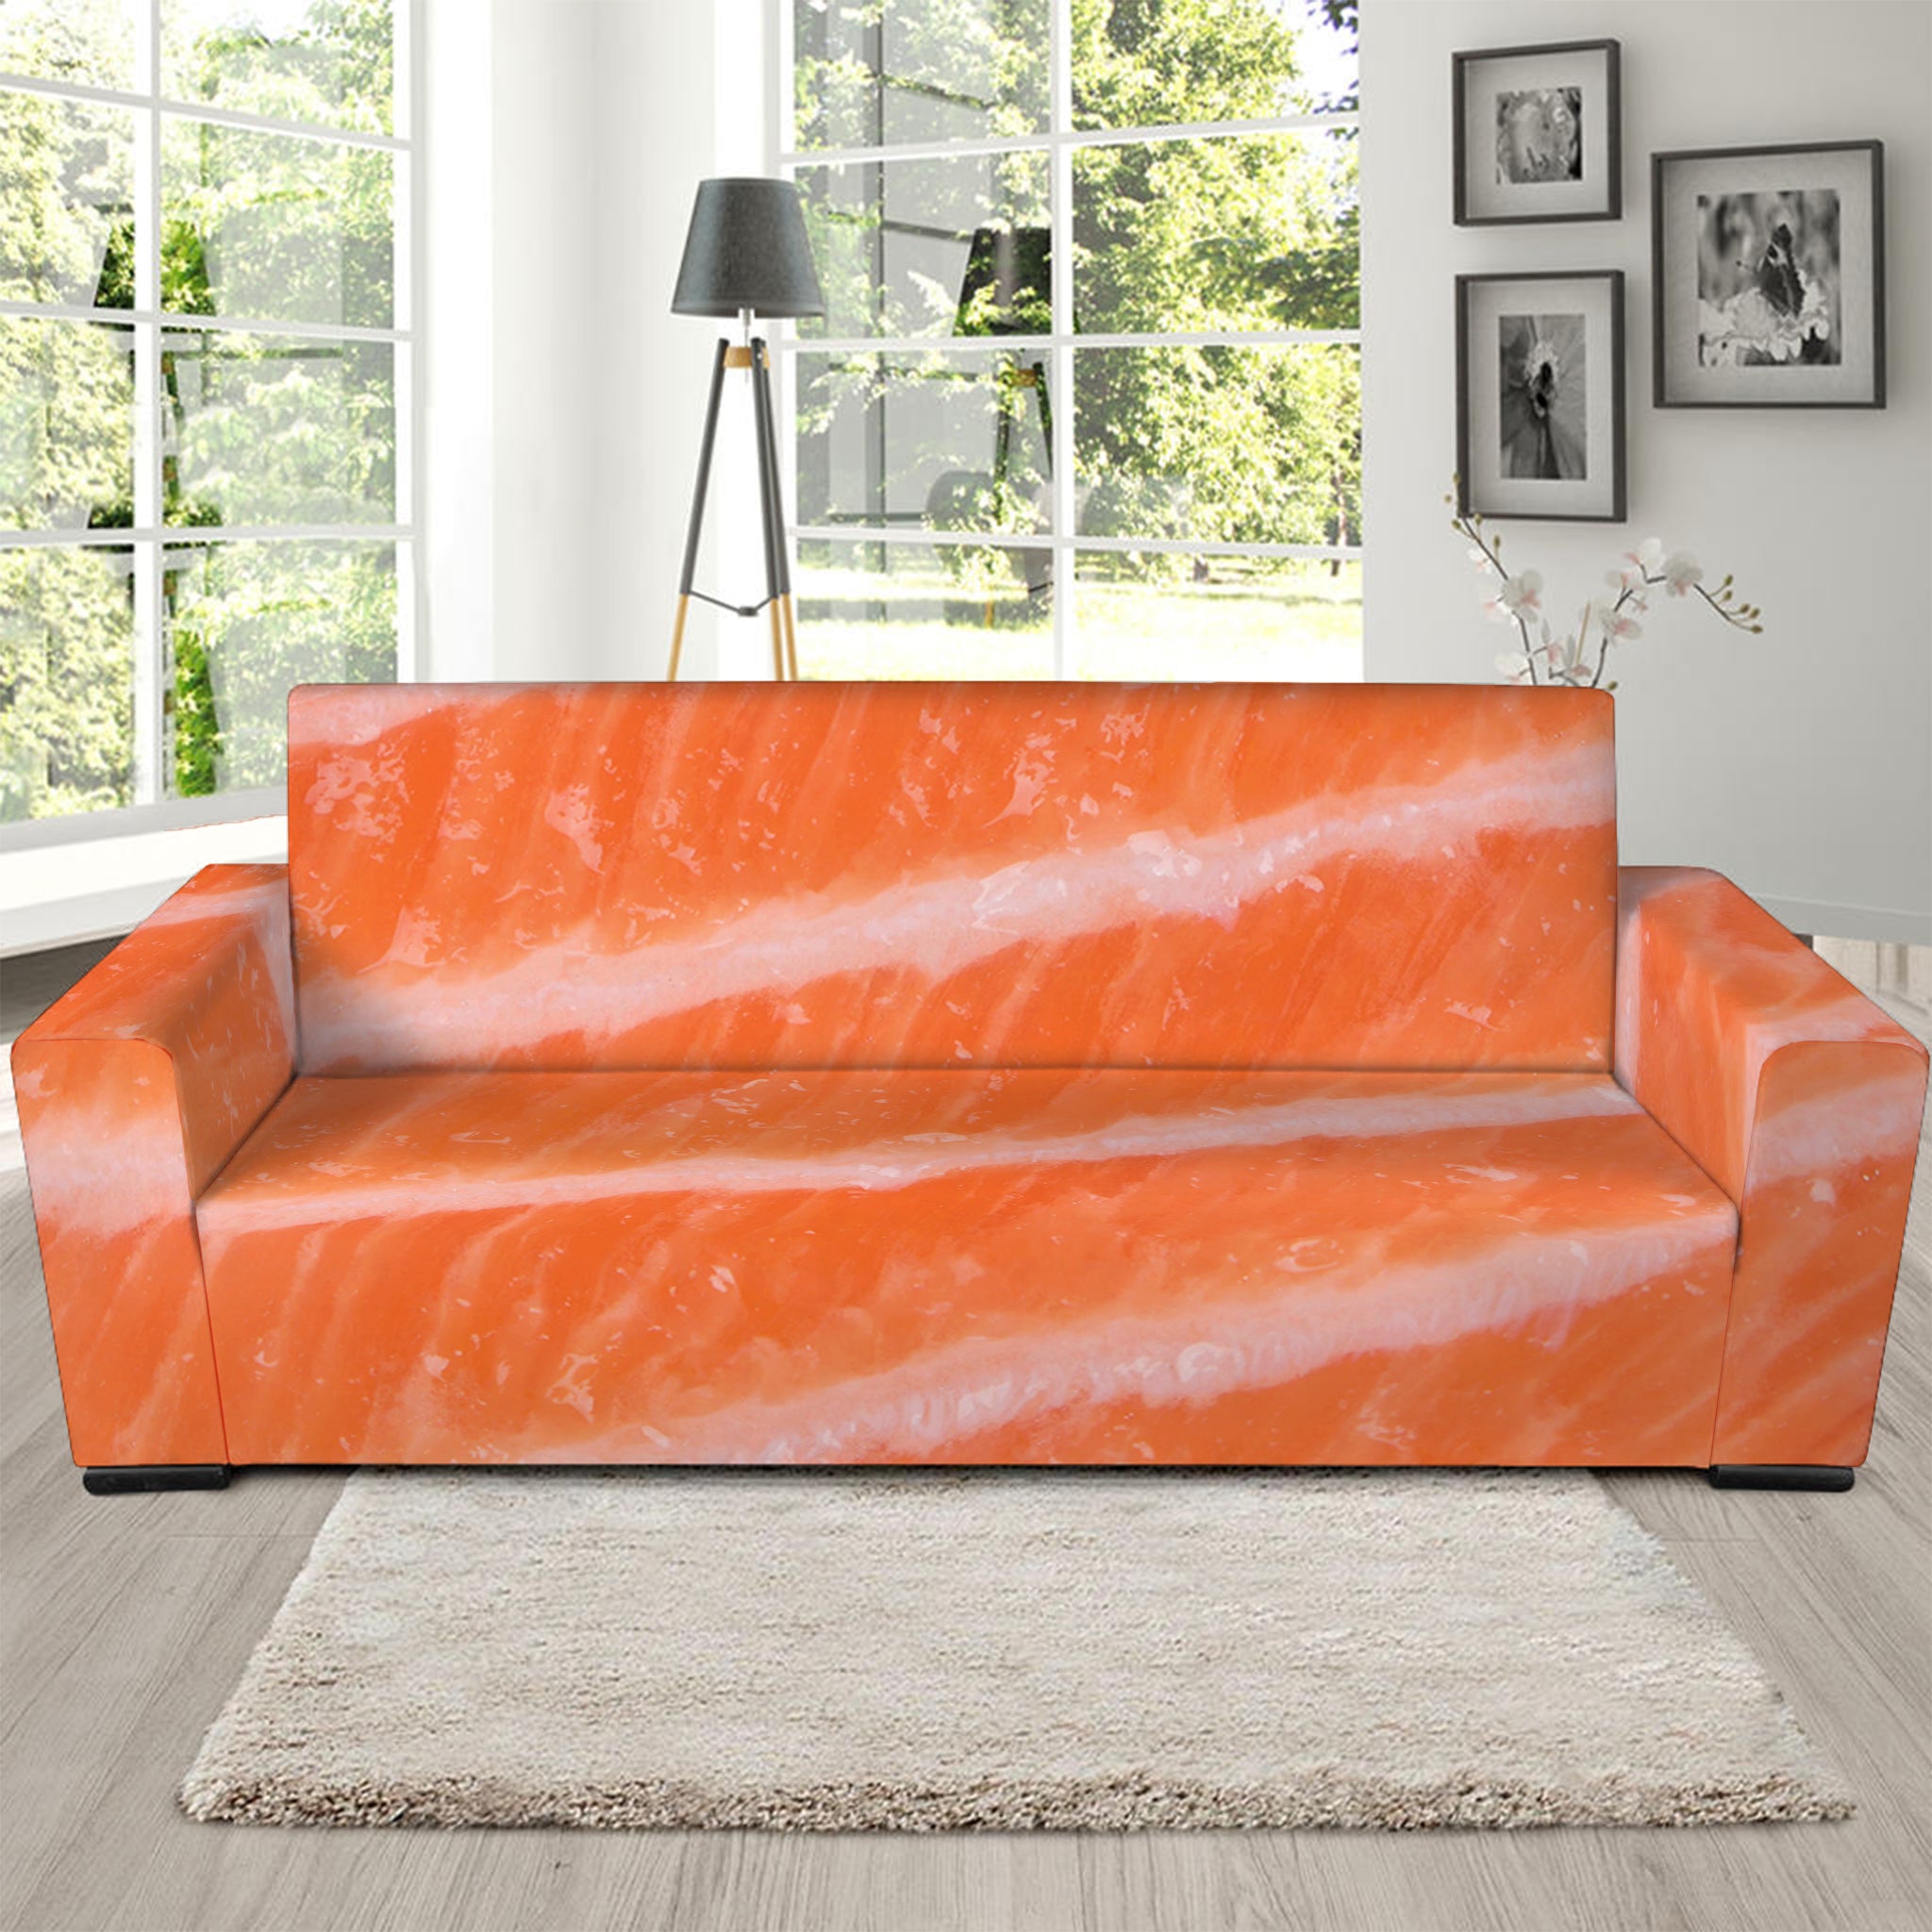 Salmon Fillet Print Sofa Slipcover